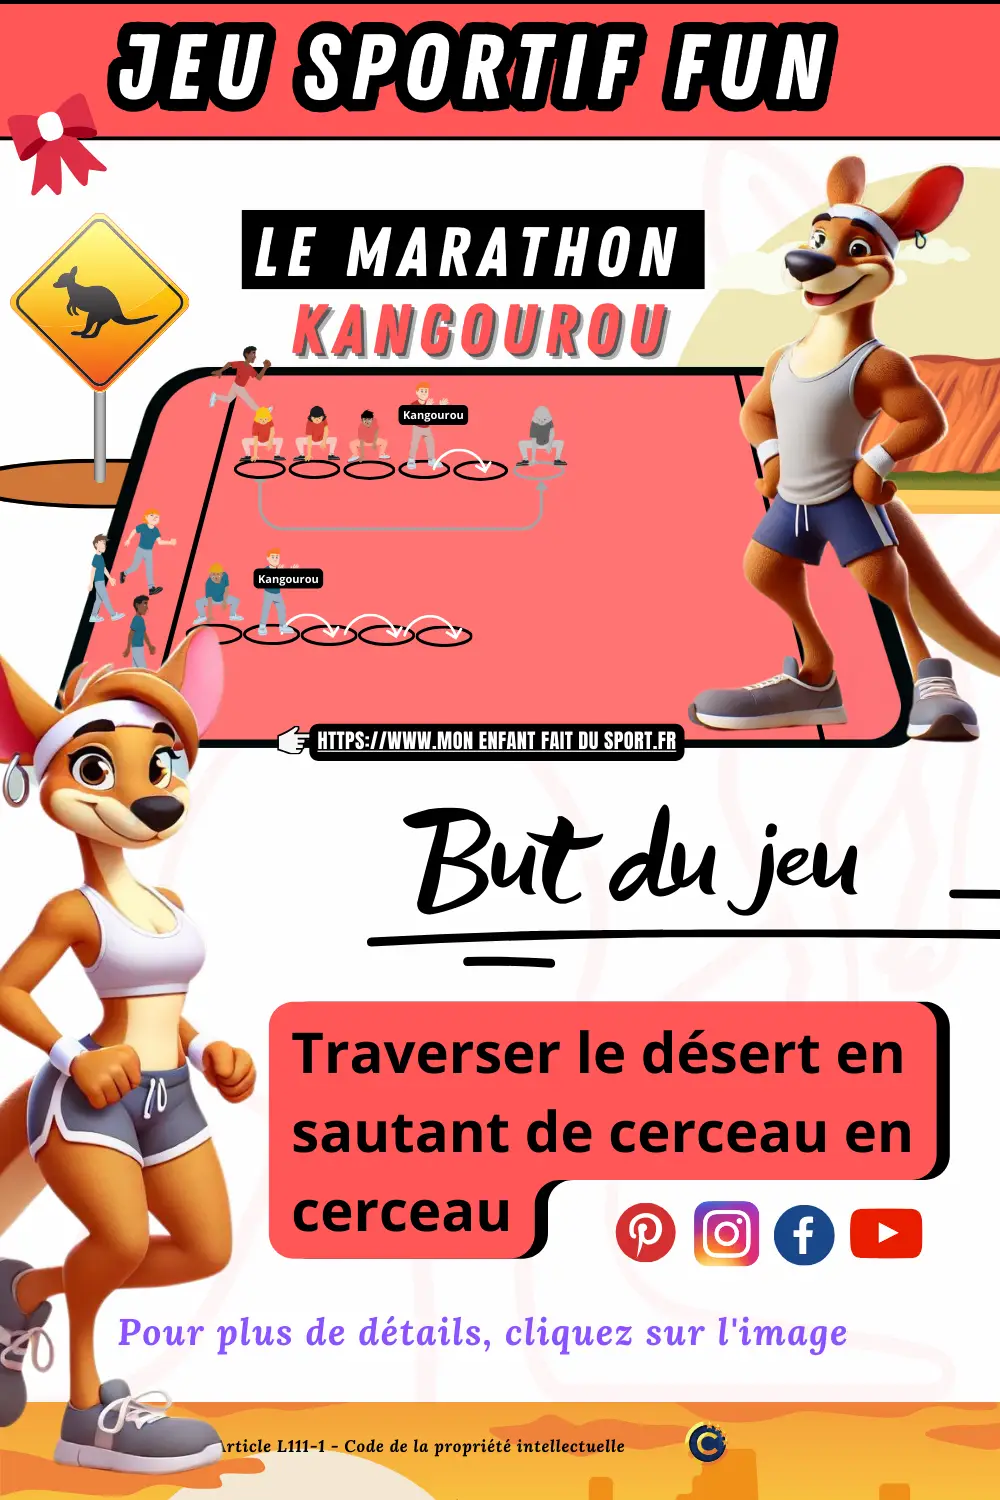 Le jeu sportif "Marathon Kangourou" est un jeu sportif fun. Le but du jeu est traverser le désert en sautant de cerceau en cerceau